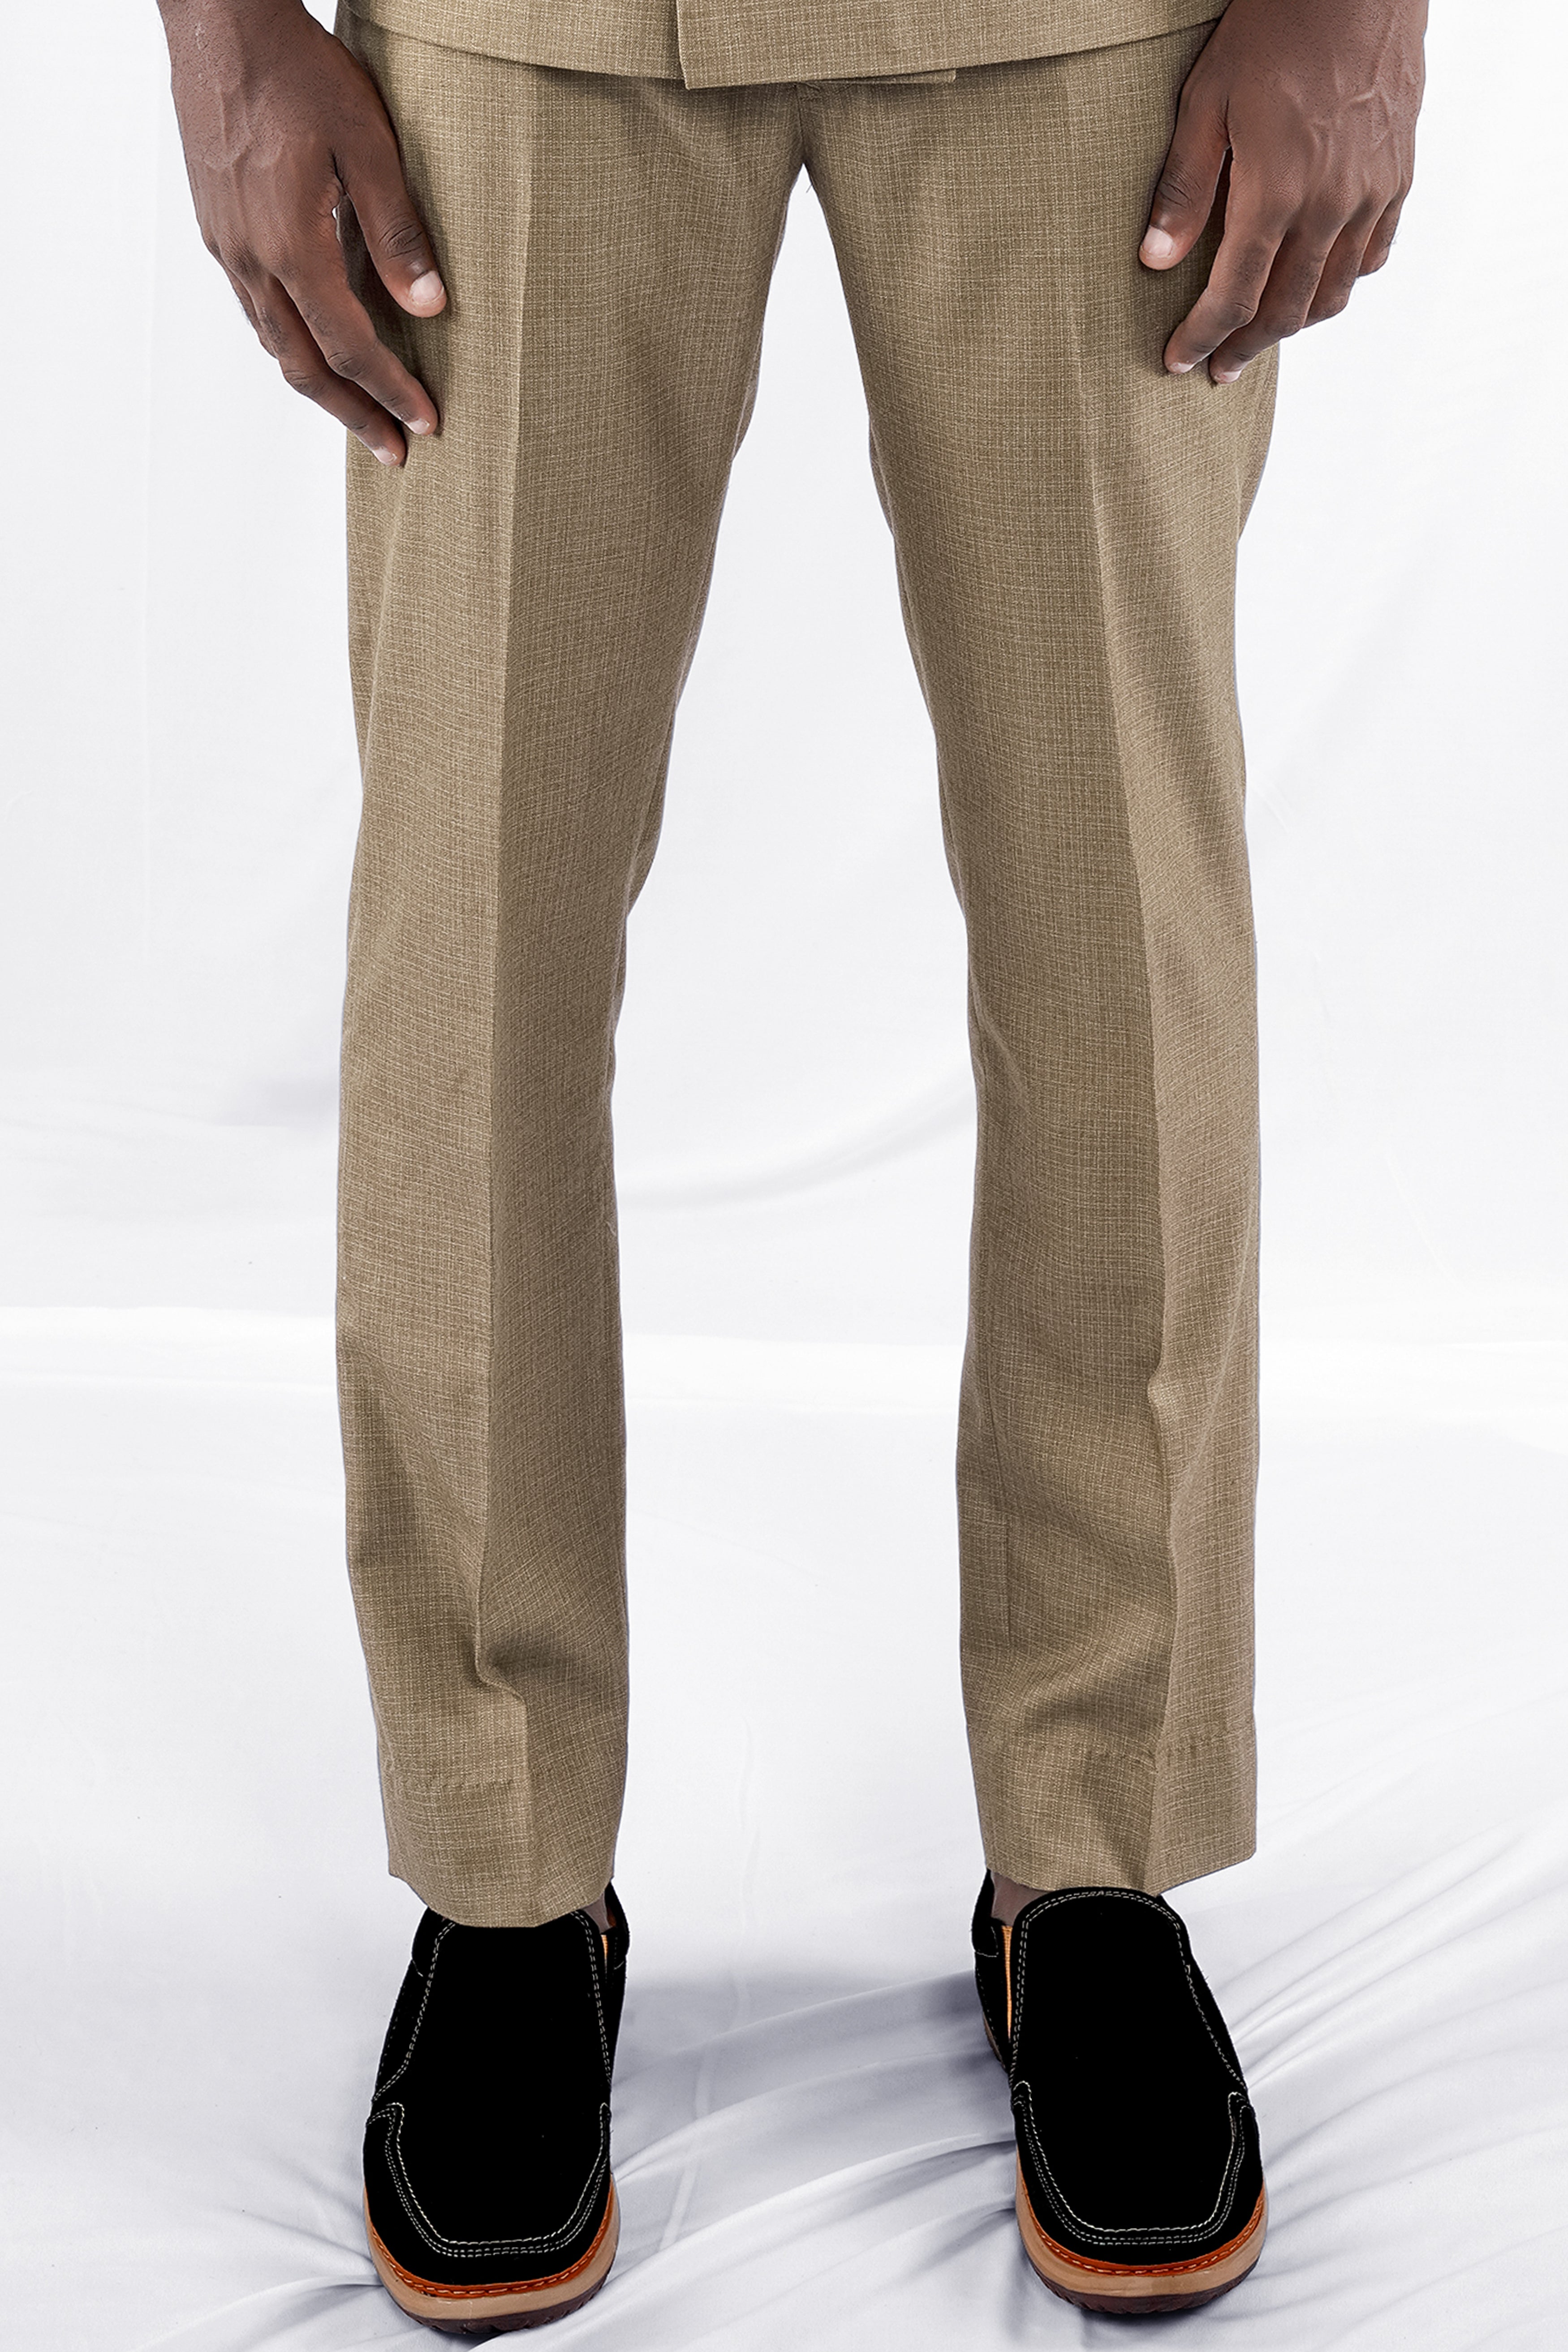 ♧ Lightbrown Herringbone Trousers - BLACKFISH Brand New & Vintage